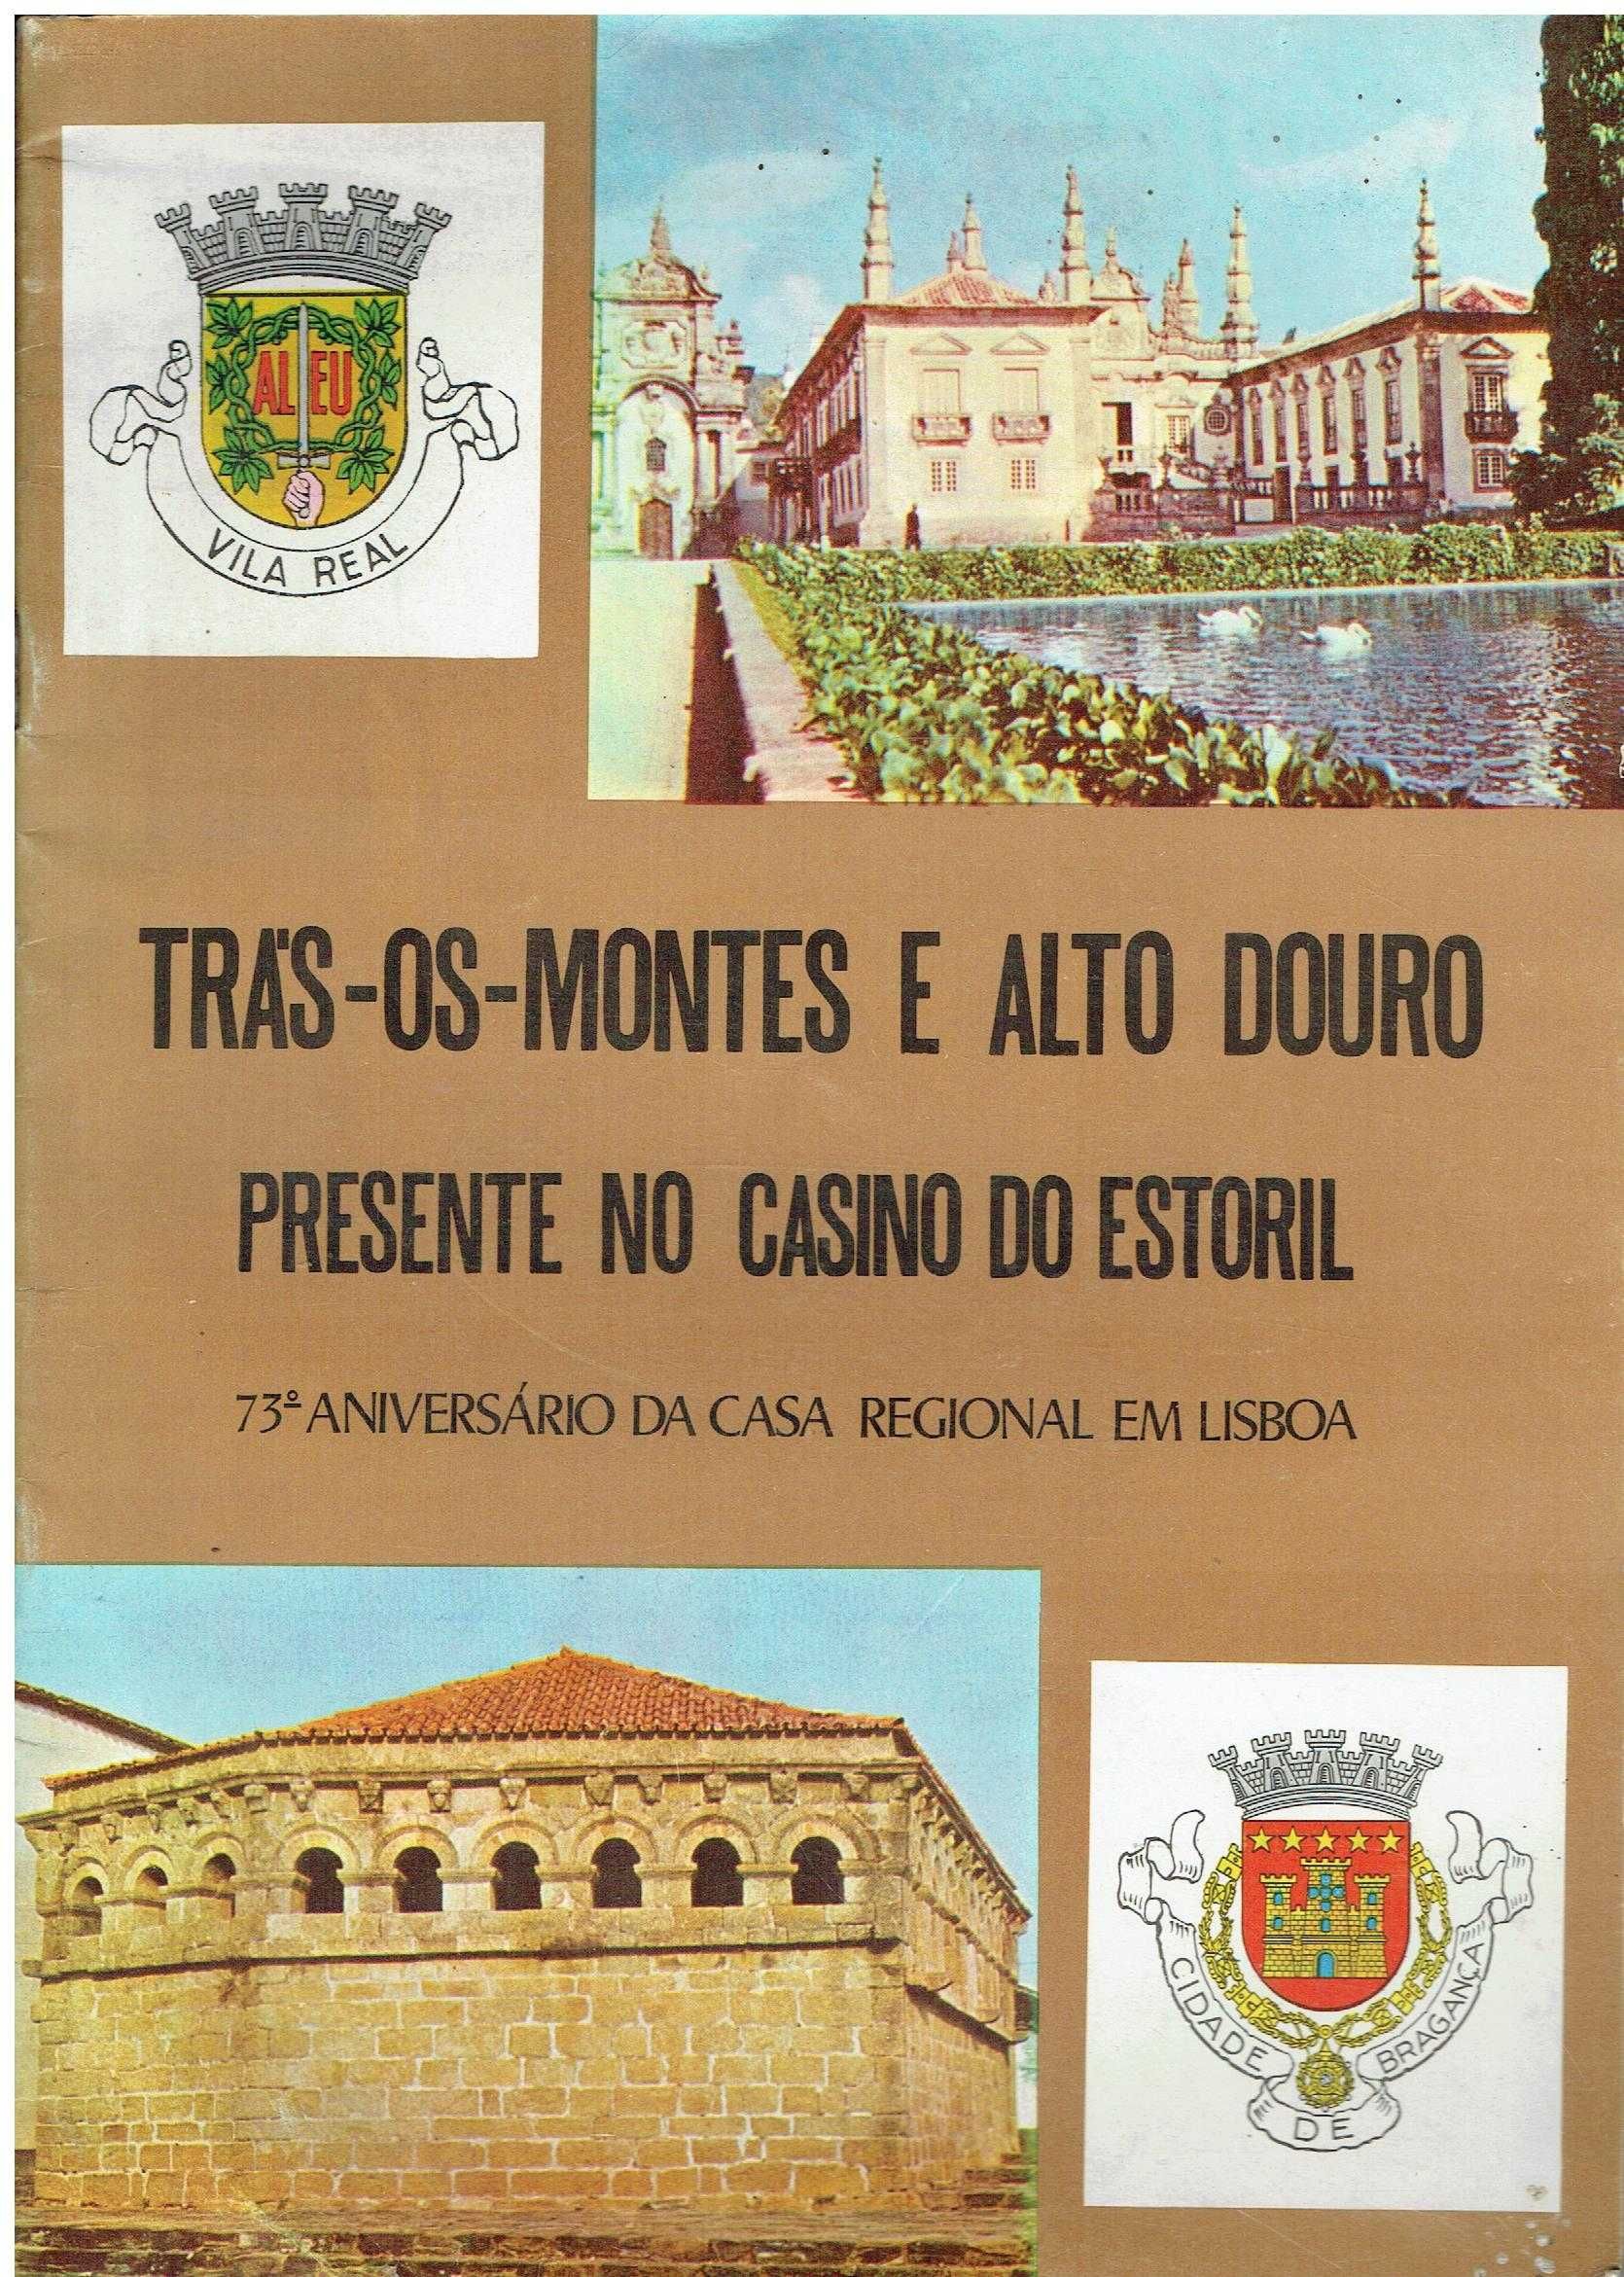 12921

Trás-os-Montes e Alto Douro
Presente no Casino do Estoril